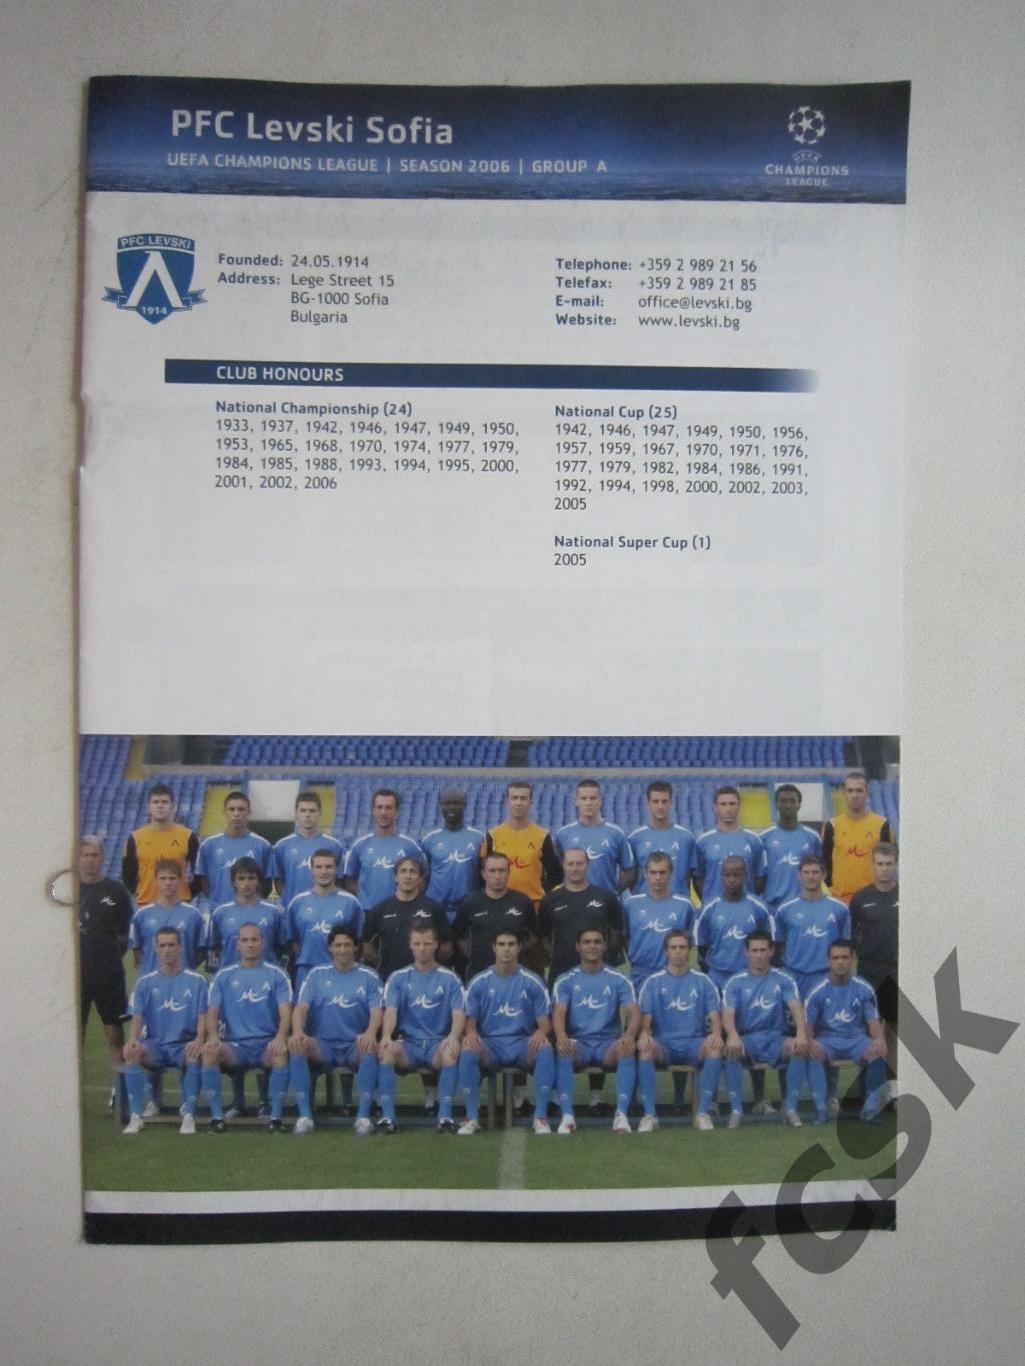 Лига чемпионов Левски София Болгария 2006-2007 Официальный справочник УЕФА (ф3)